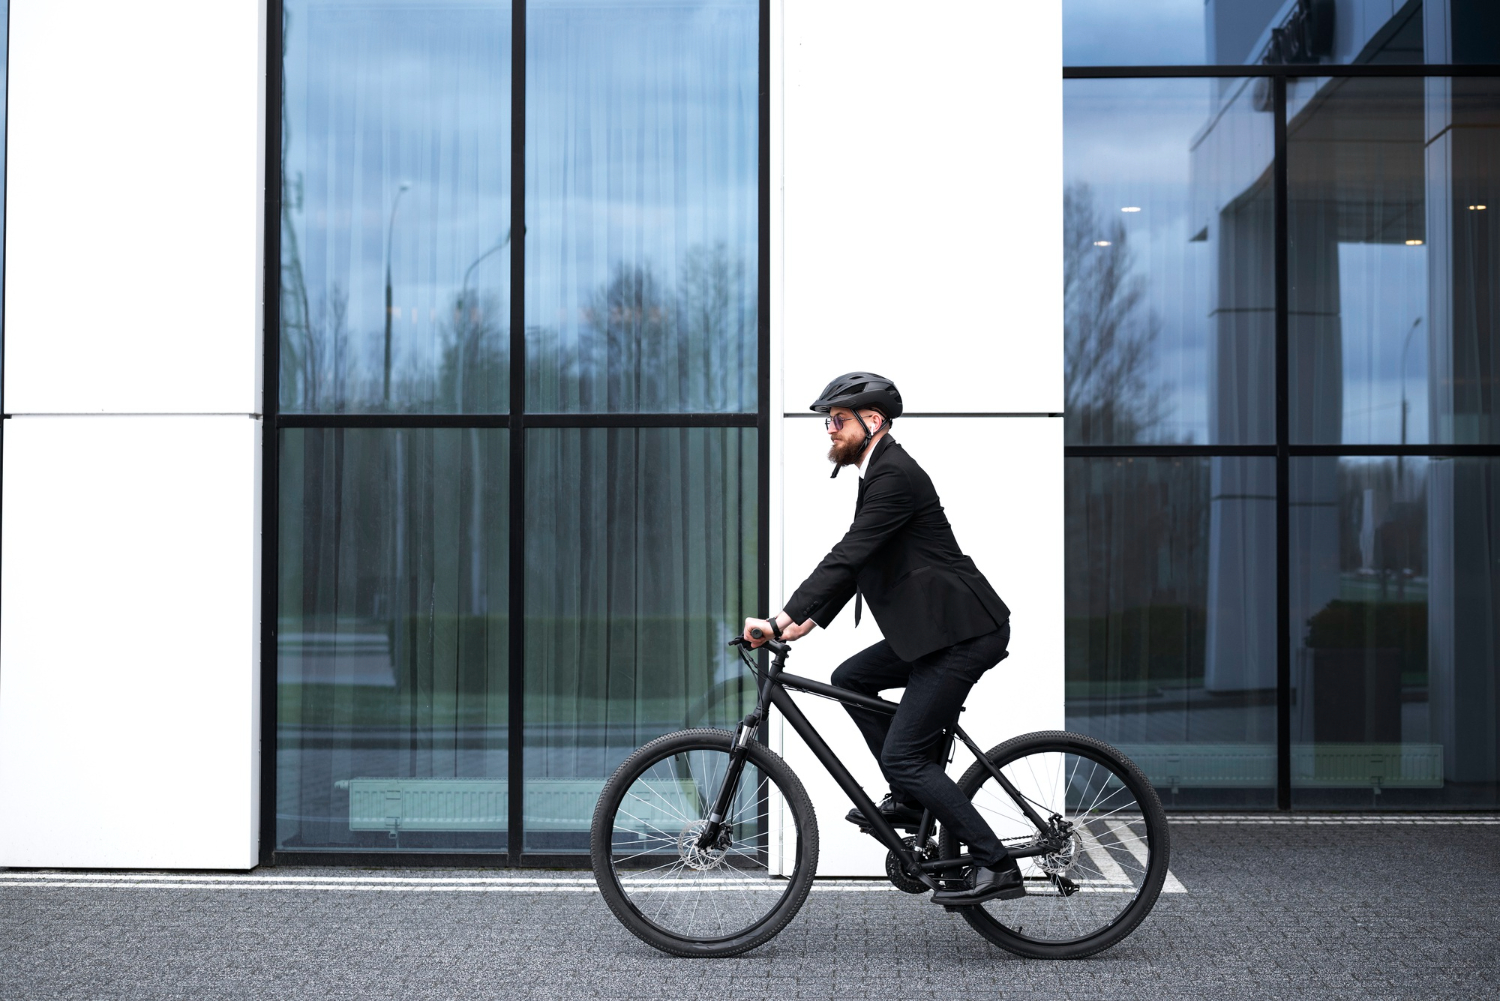 Di chuyển dễ dàng khi đạp xe đến công ty